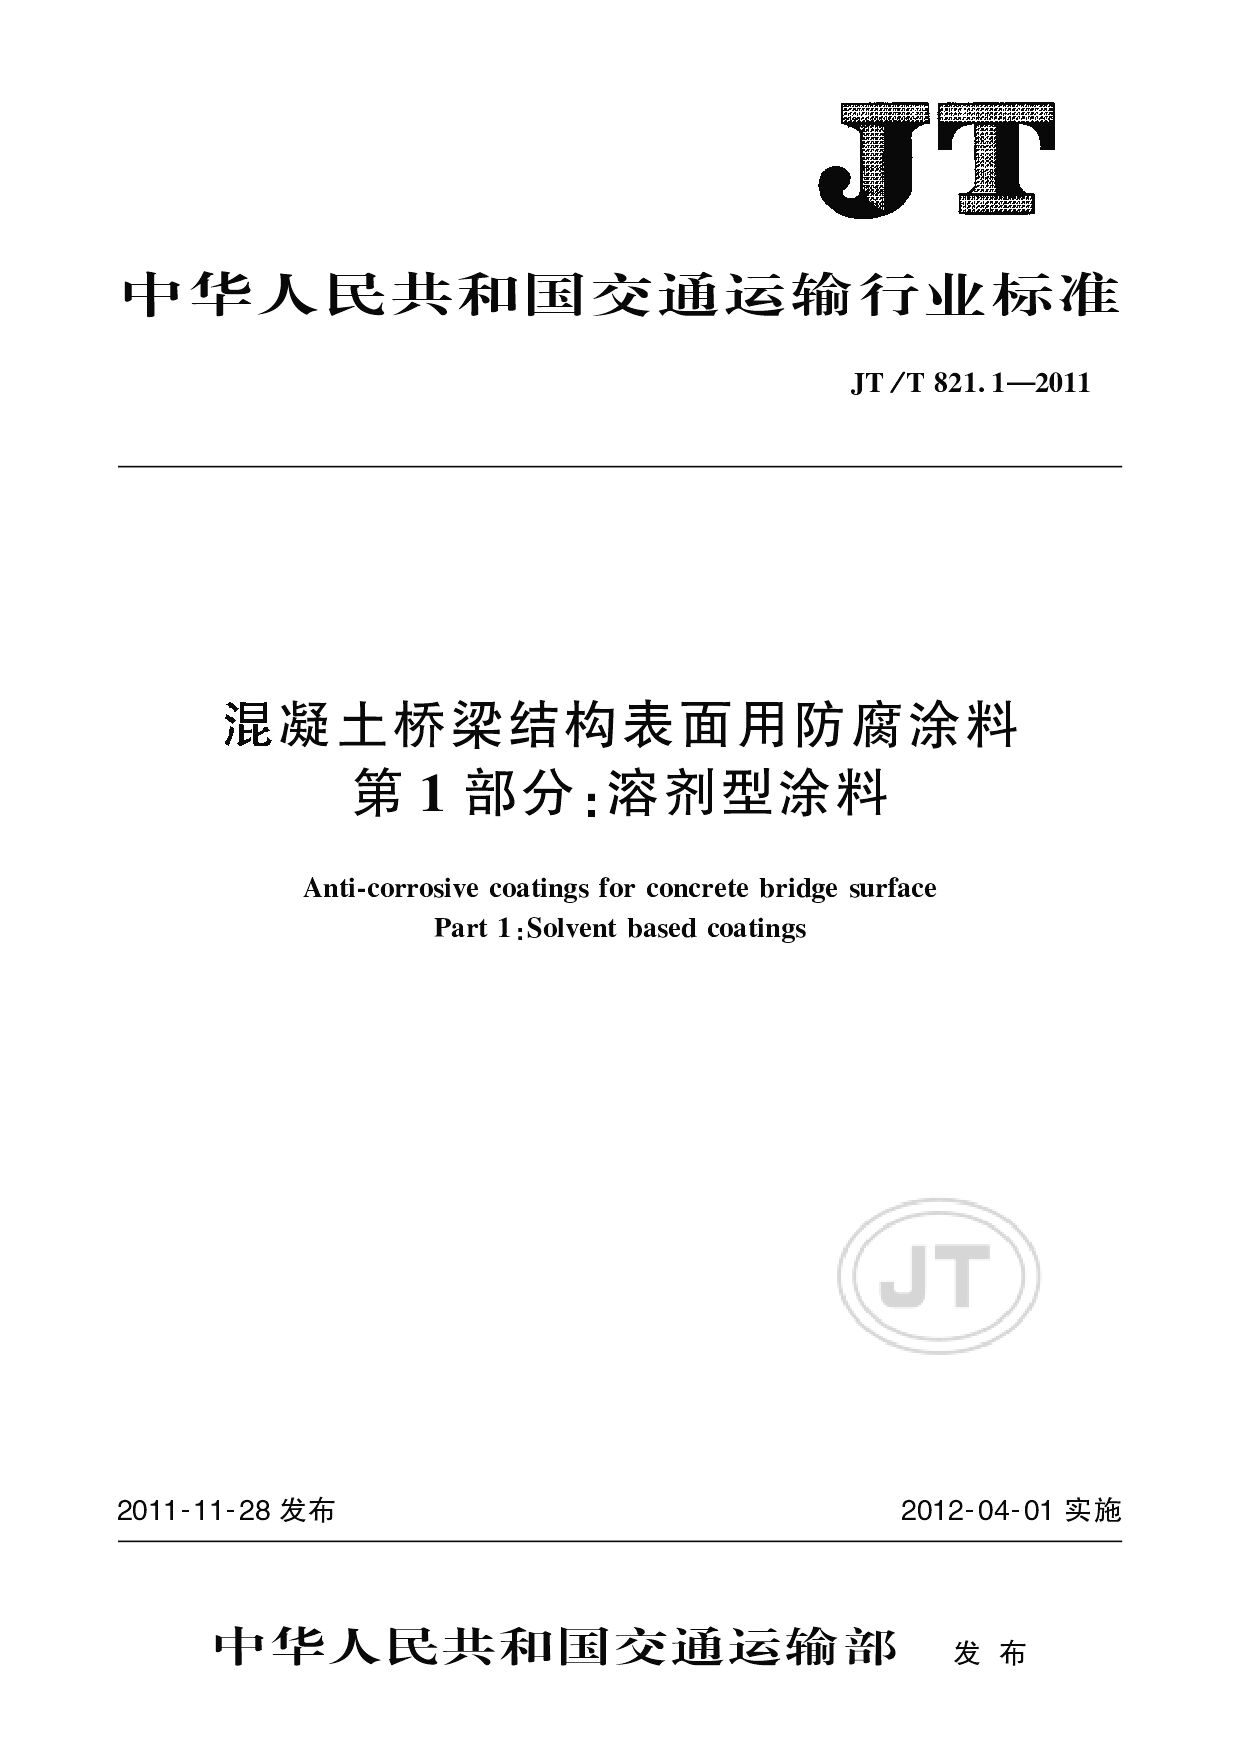 JT/T 821.1-2011封面图